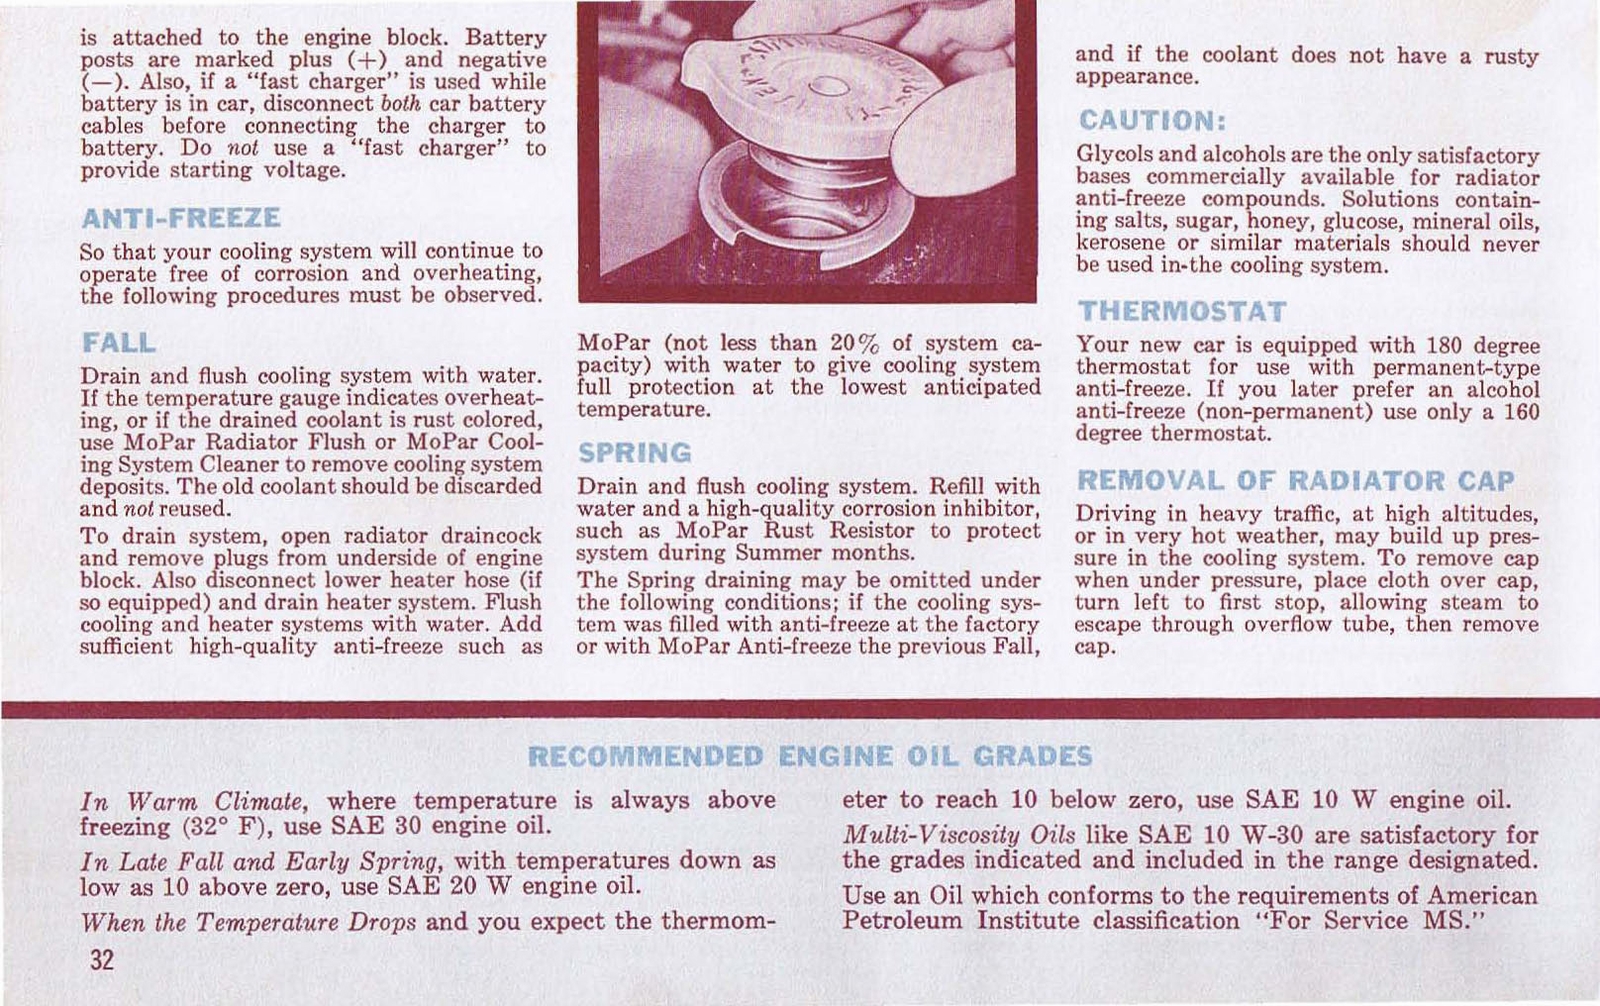 n_1962 Plymouth Owners Manual-32.jpg